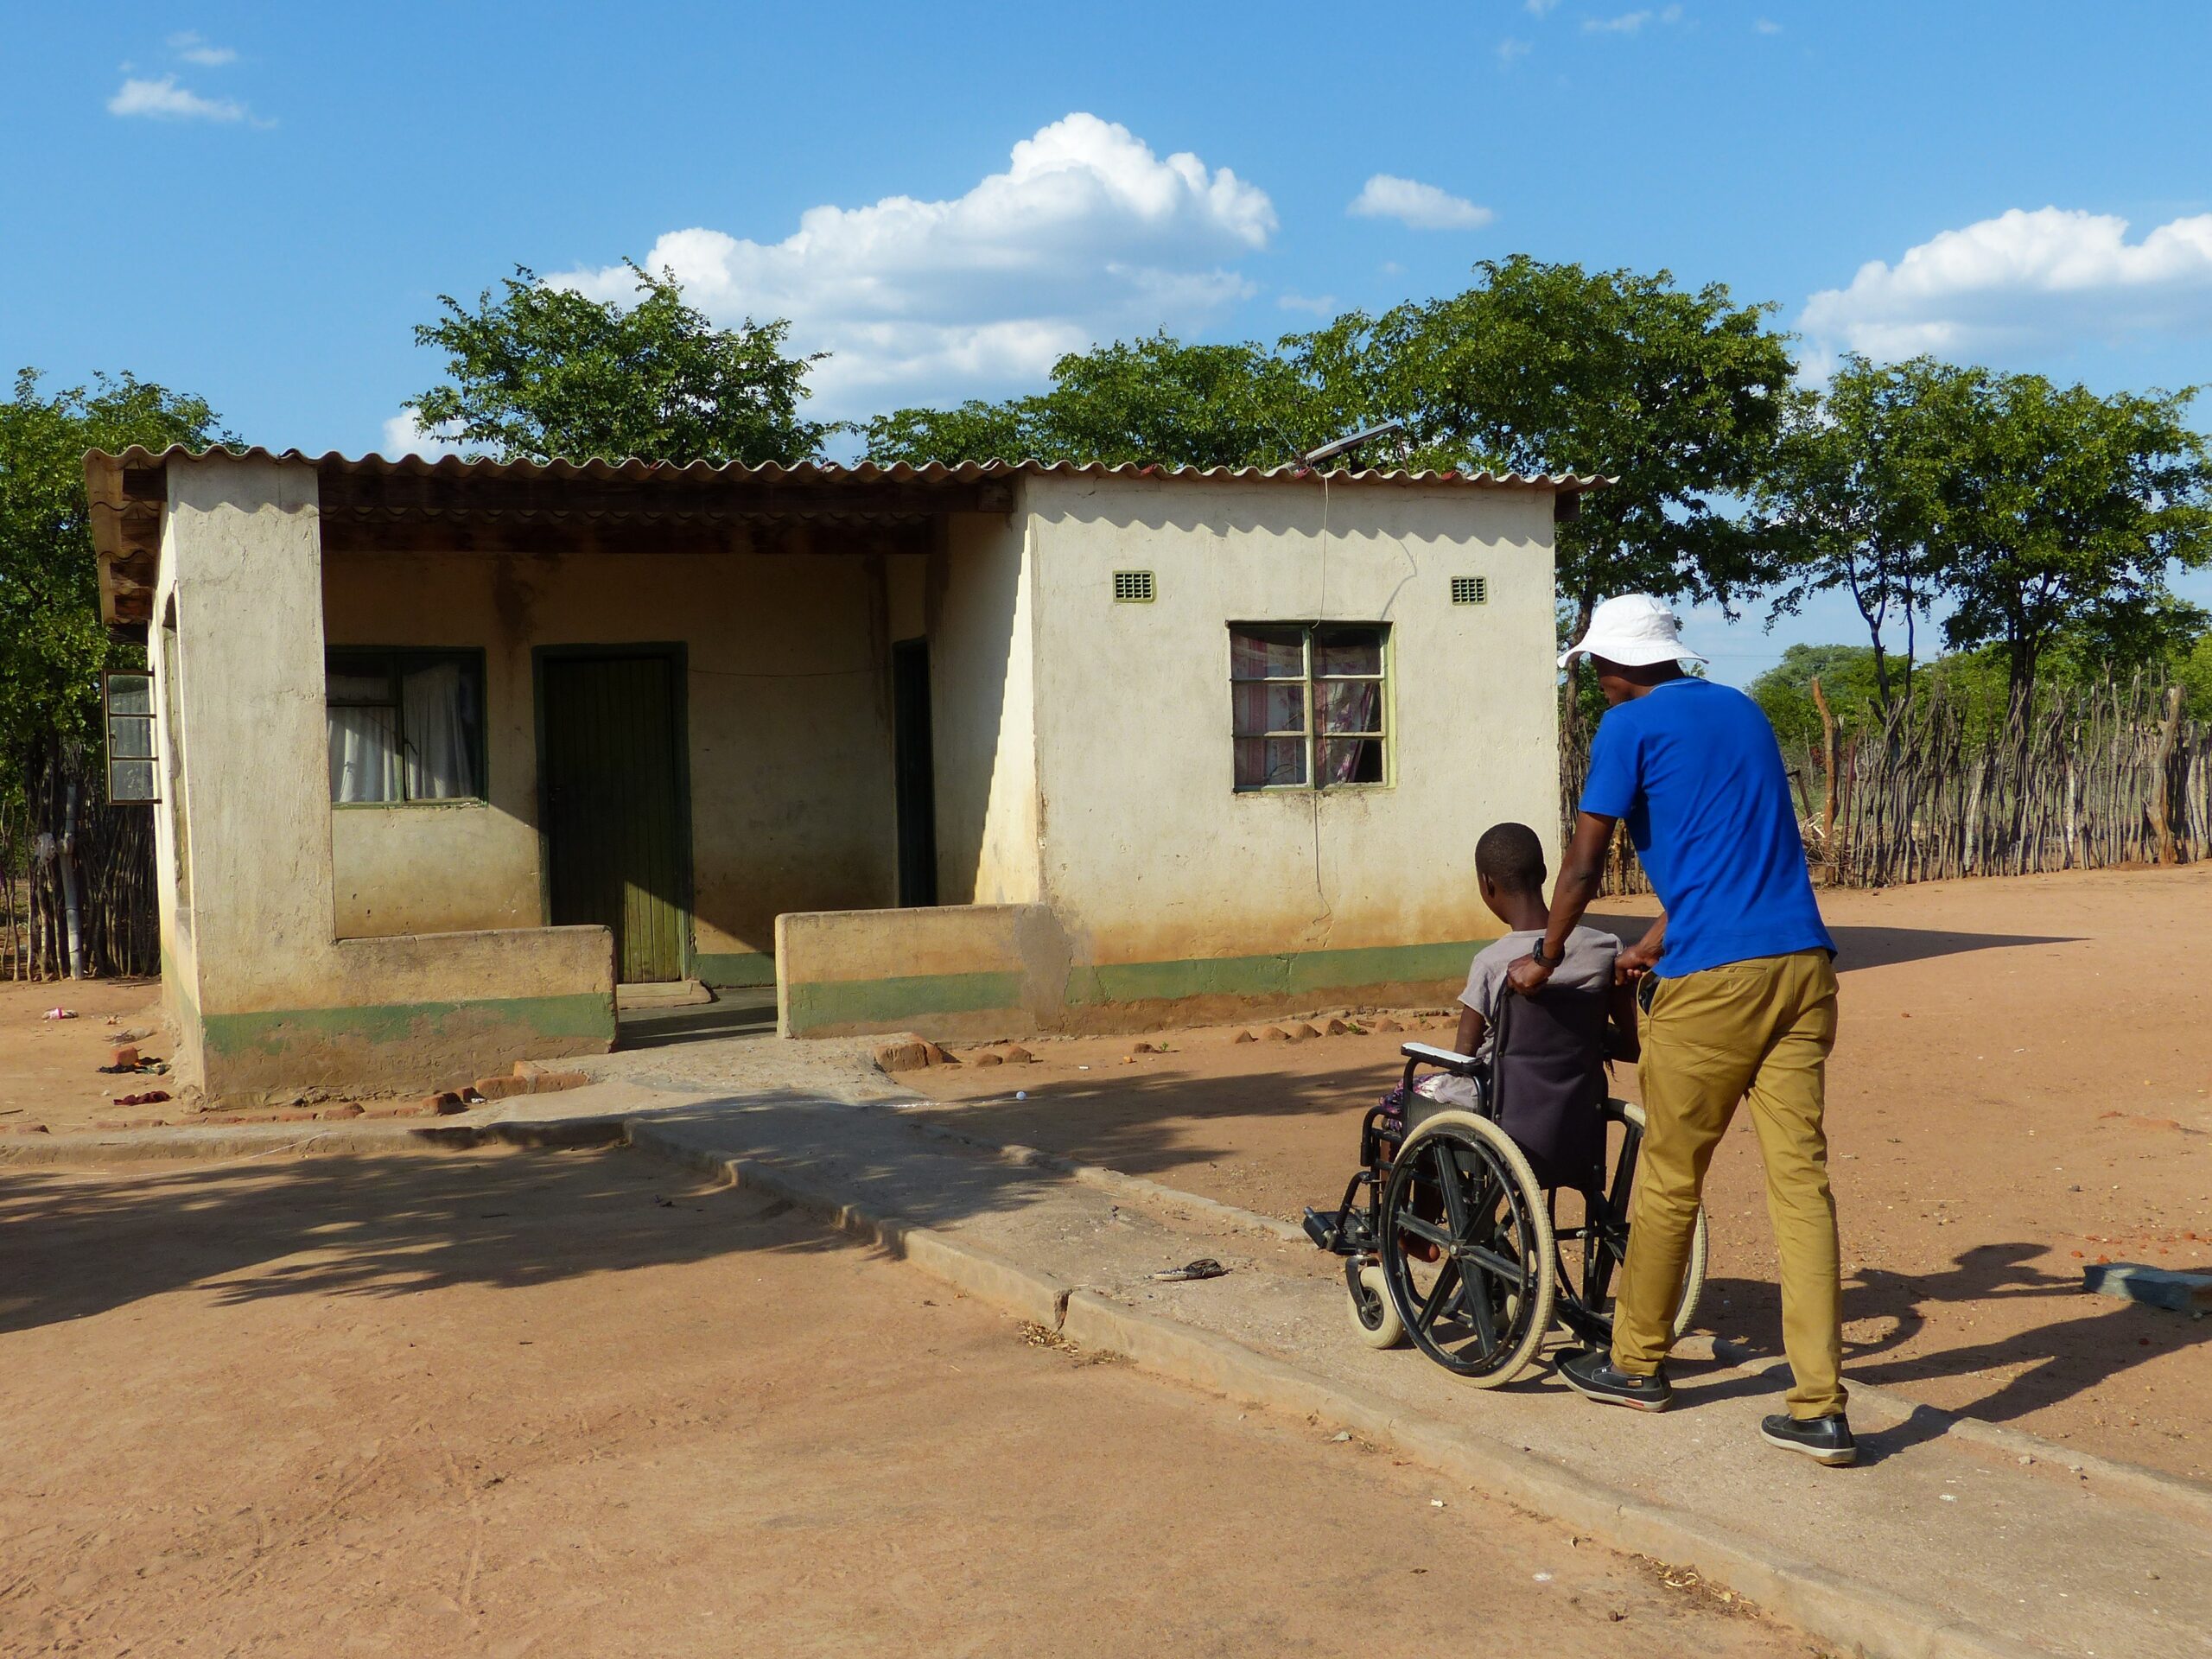 Thembelihle kan dankzij de rolstoel naar school